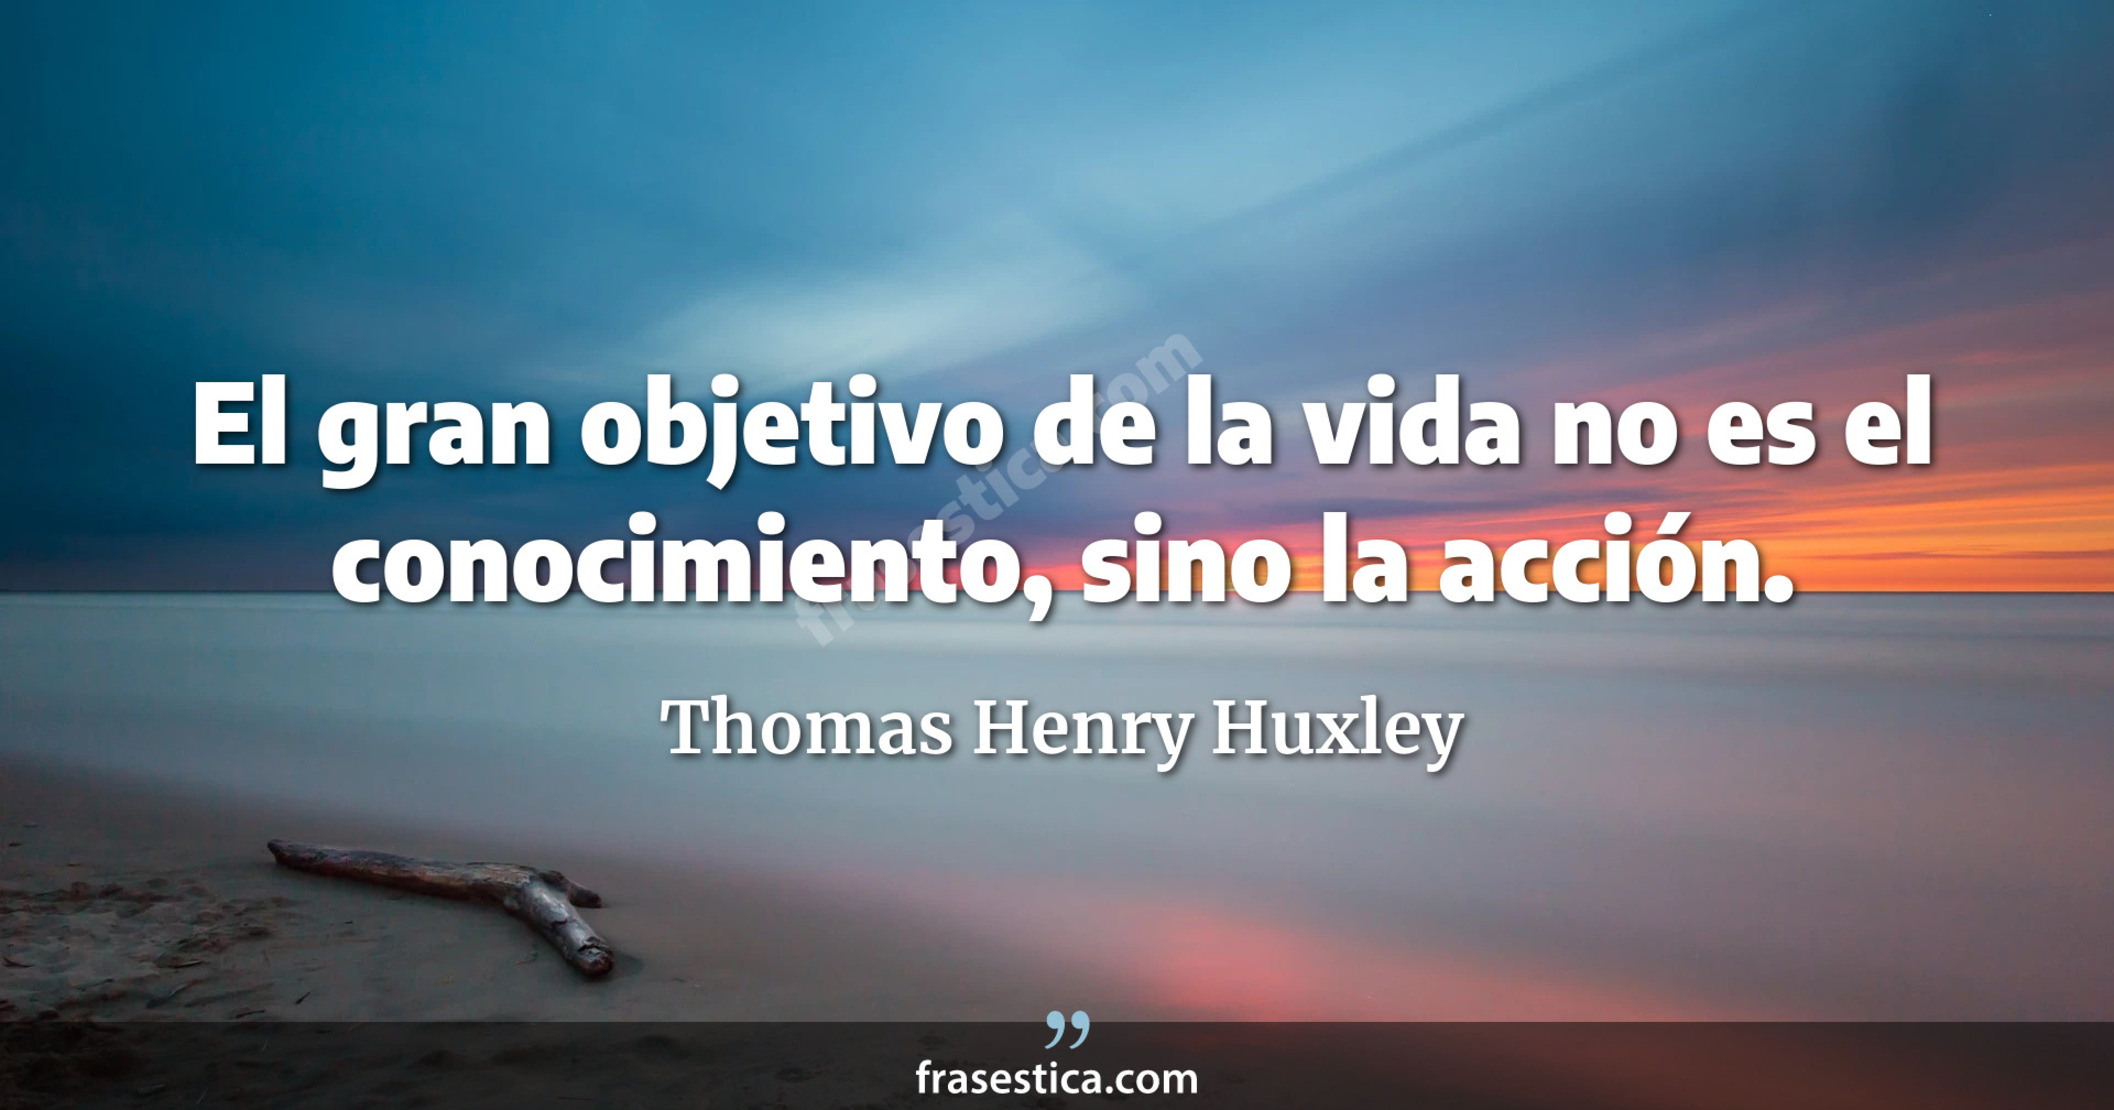 El gran objetivo de la vida no es el conocimiento, sino la acción. - Thomas Henry Huxley